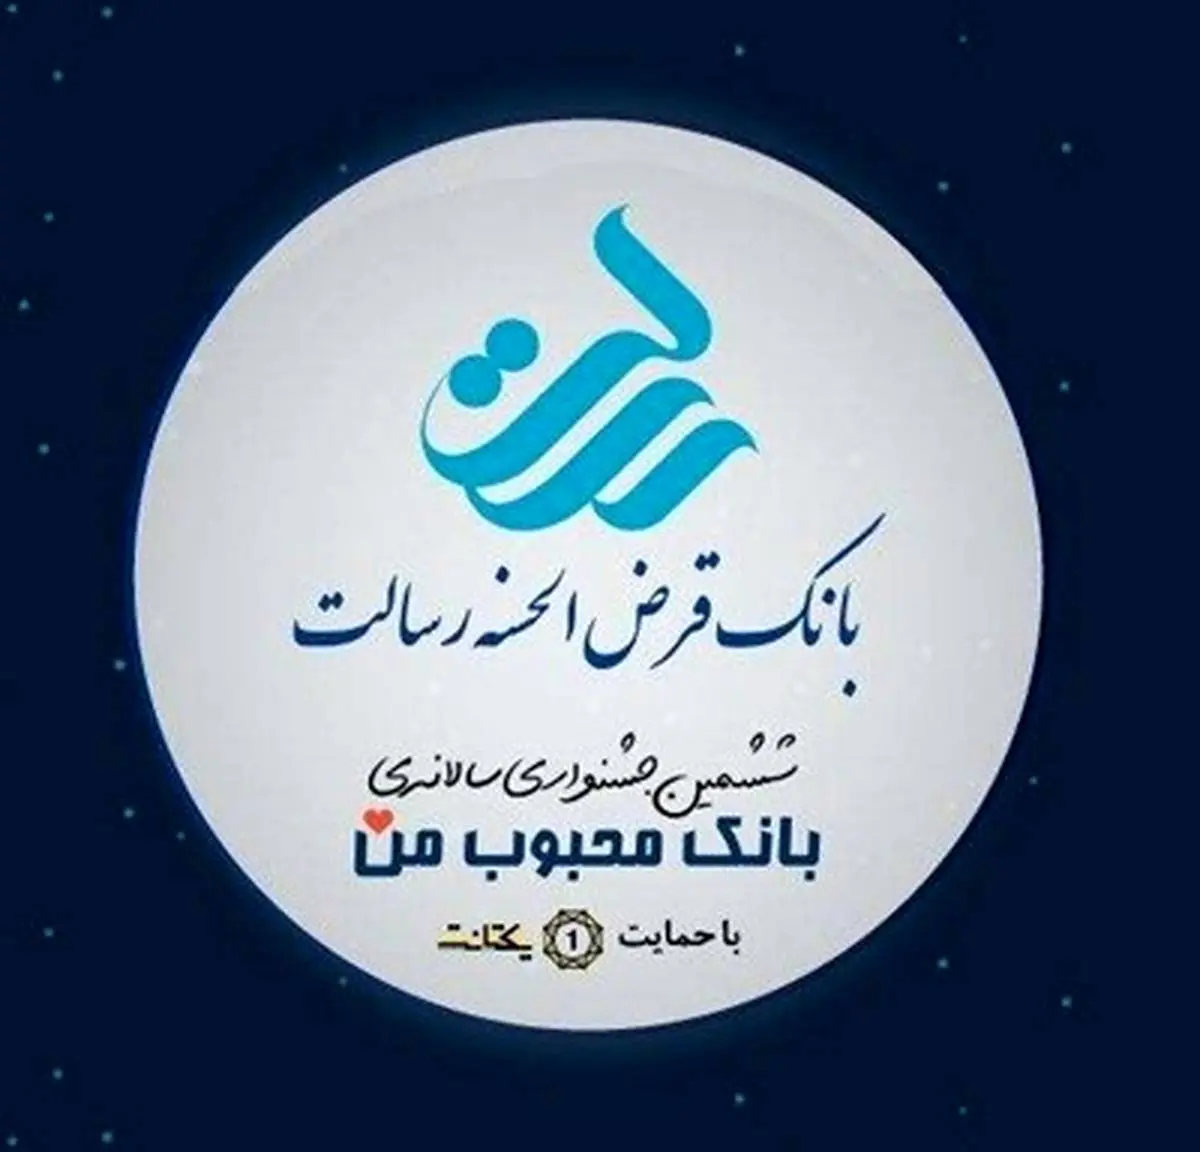 بانک قرض الحسنه رسالت سومین بانک محبوب ایران شد

